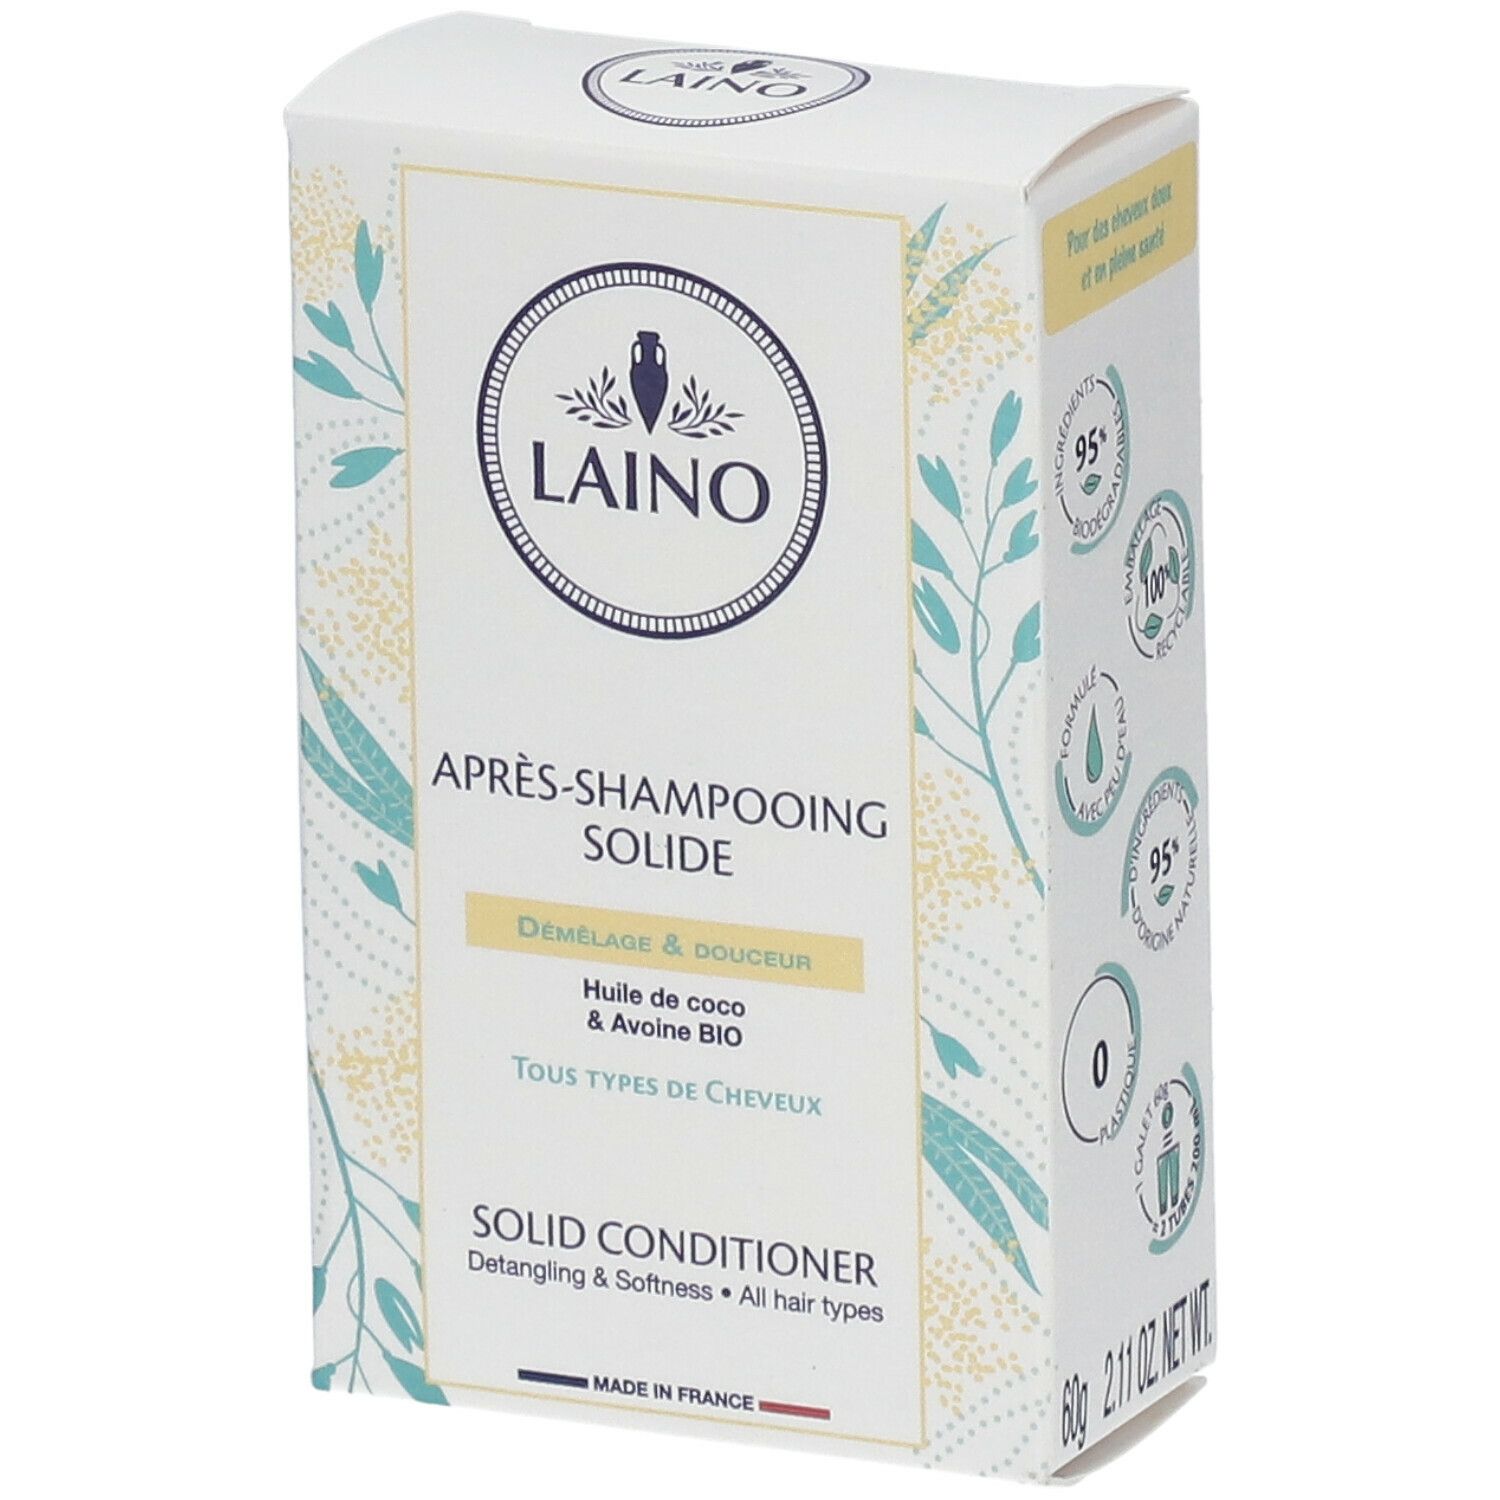 Laino Après-shampooing solide Démêlage & Douceur